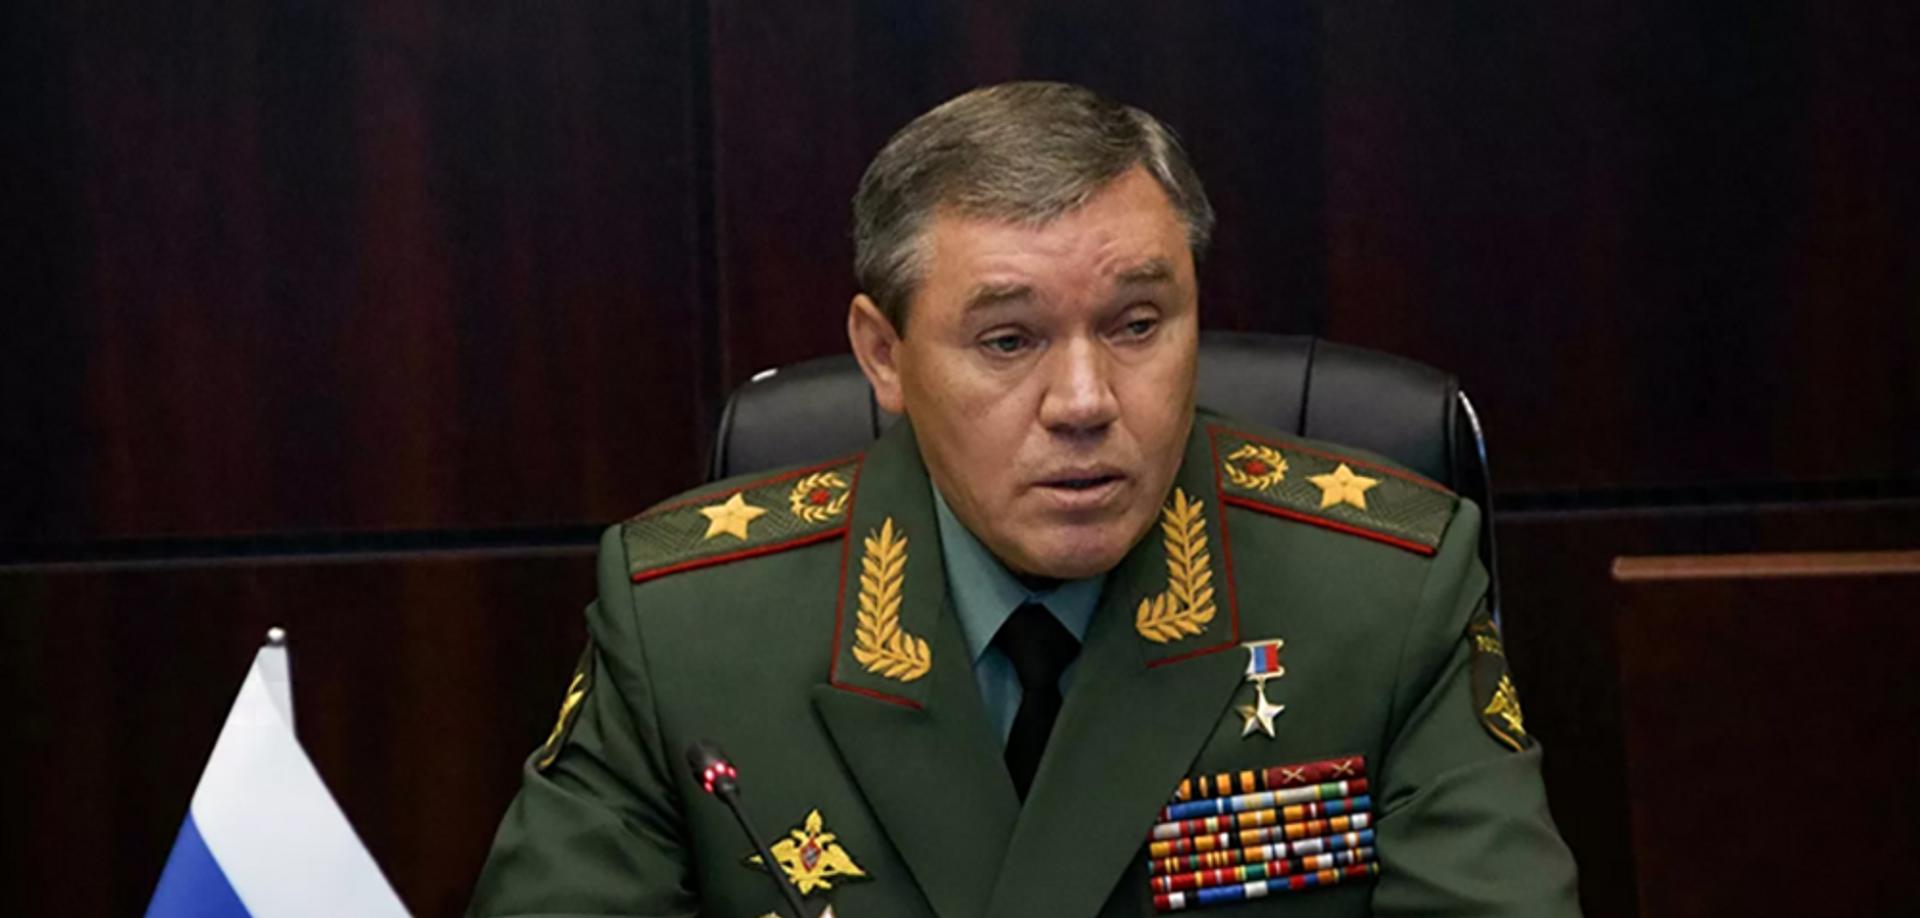 格拉西莫夫大将,已经一个月不见人影俄军高层一直保持沉默